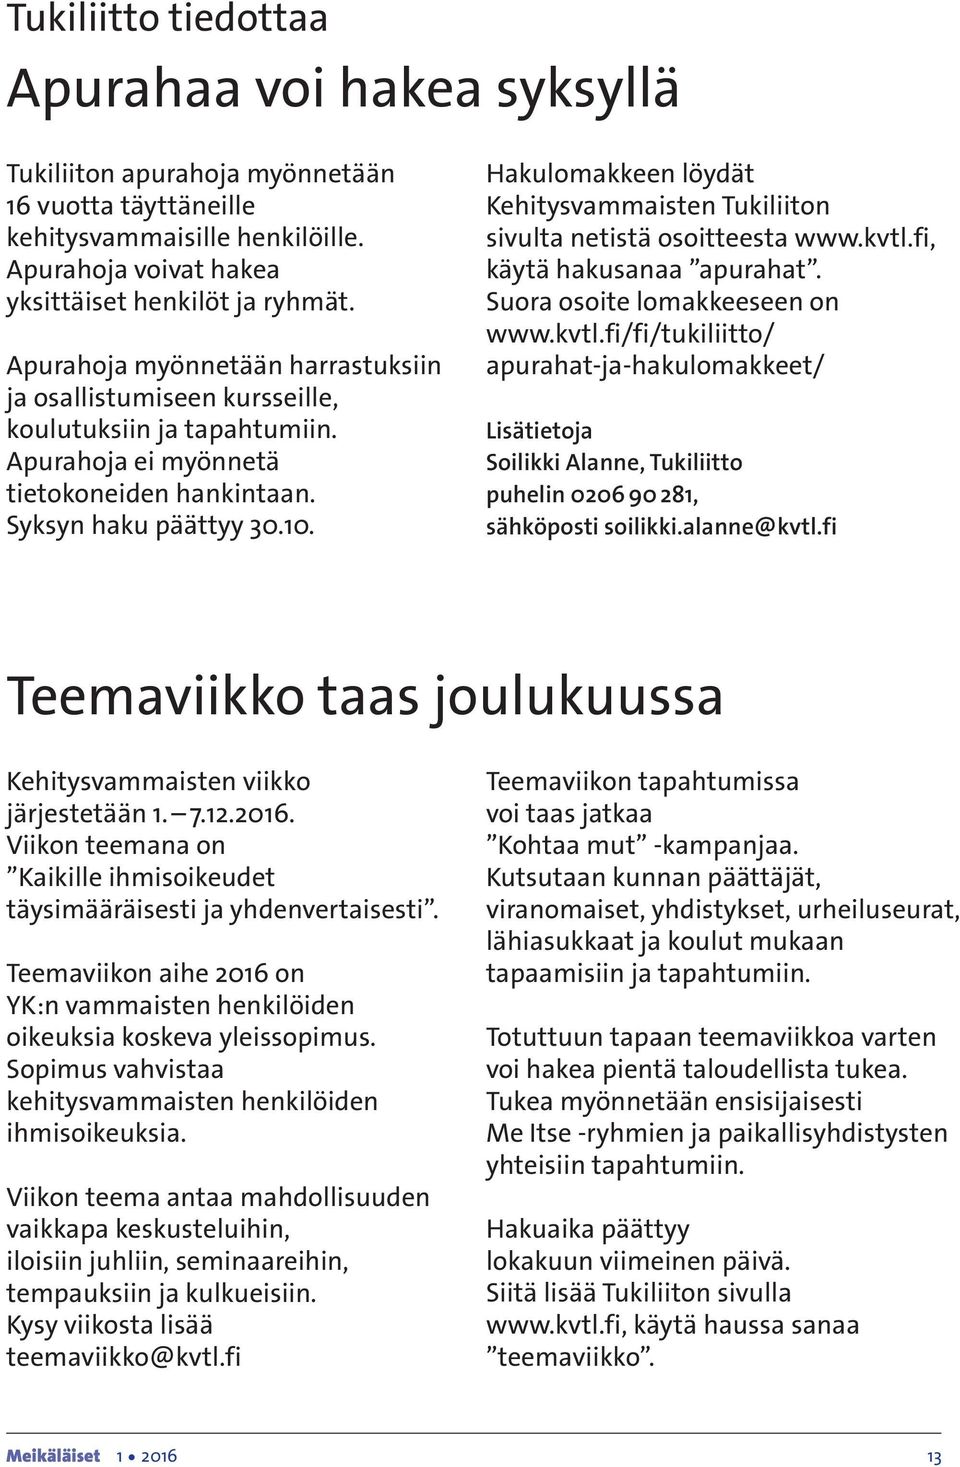 Hakulomakkeen löydät Kehitysvammaisten Tukiliiton sivulta netistä osoitteesta www.kvtl.